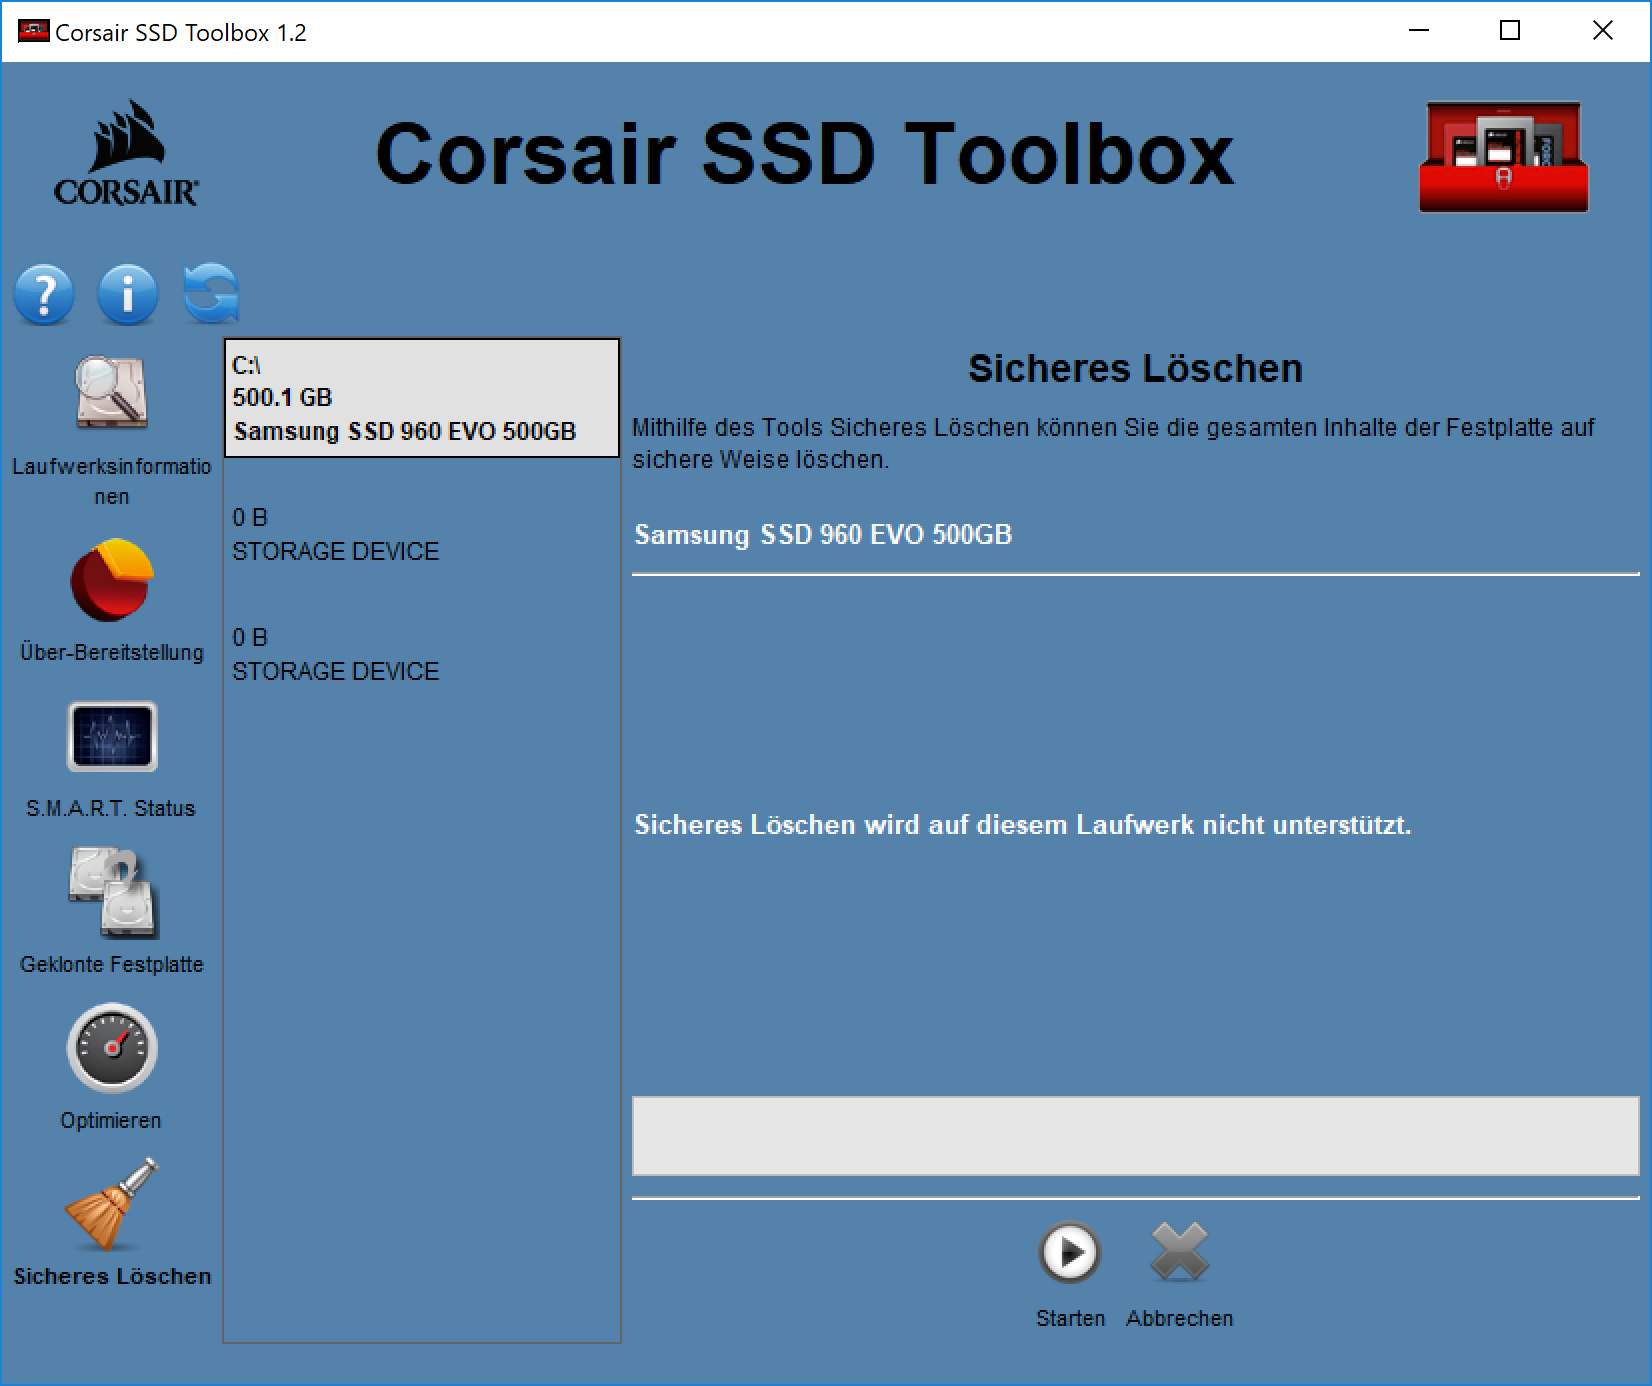 SSD komplett und sicher löschen unter Windows (Secure Erase)